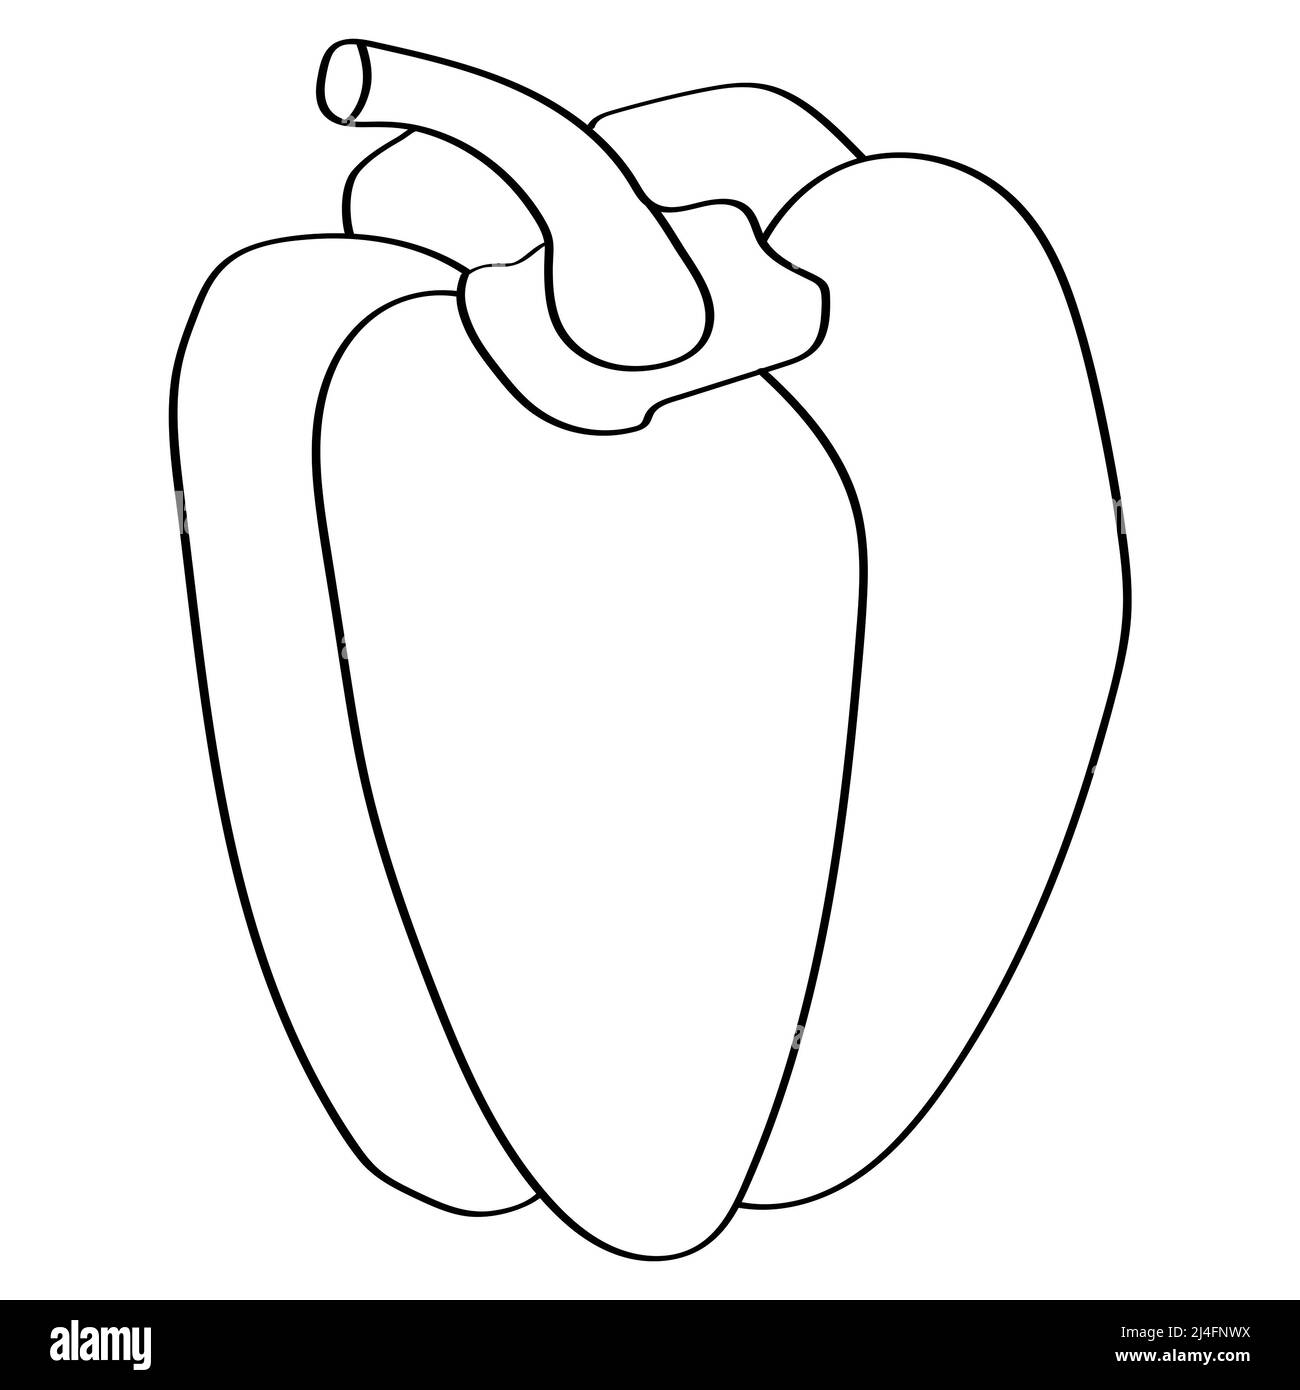 Cartoon pepper Banque d'images noir et blanc - Alamy